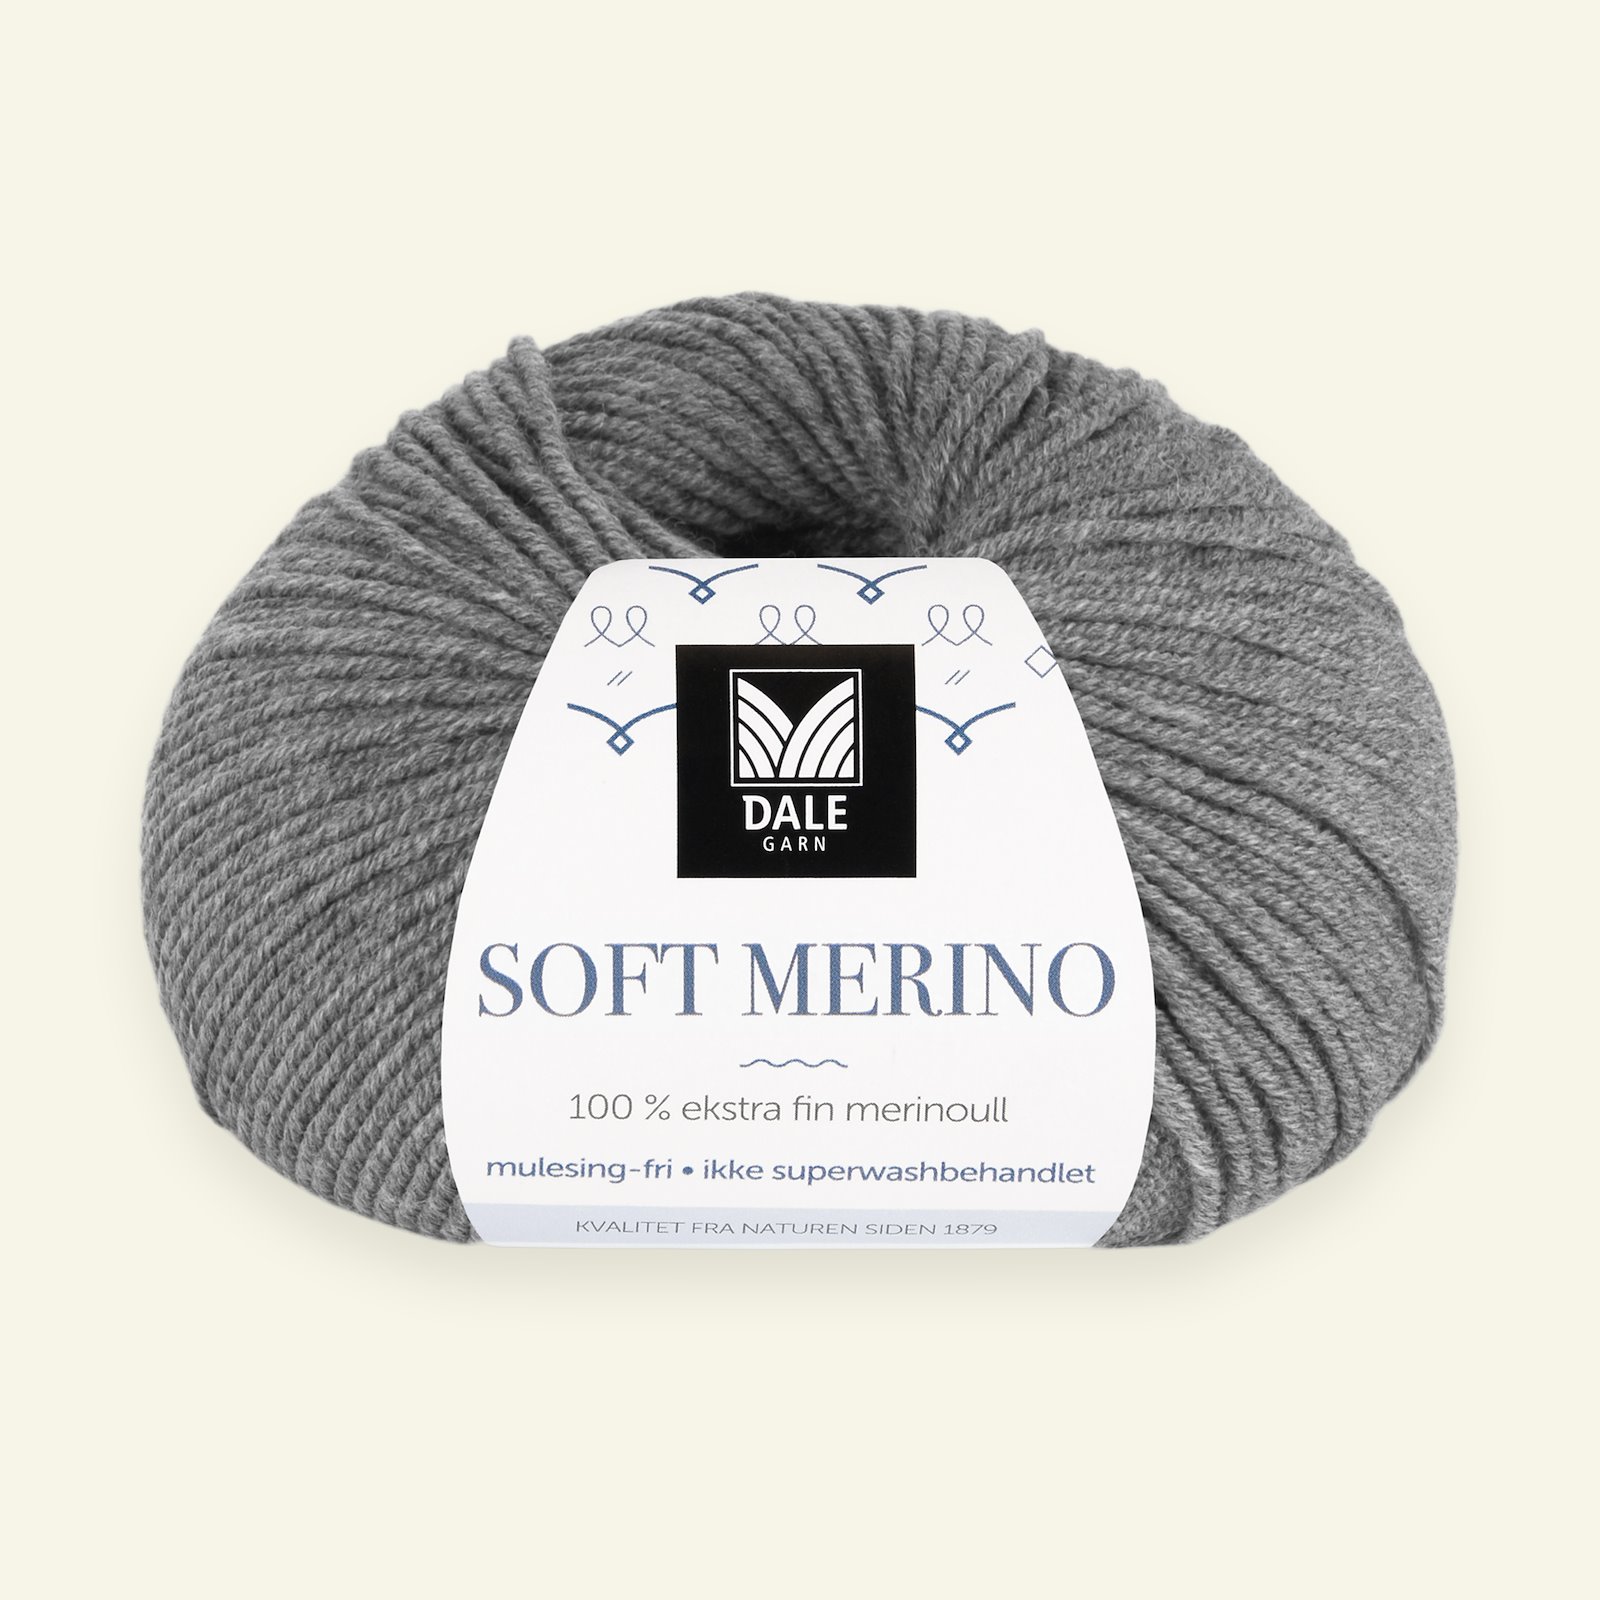 Dale Garn, 100% extra fint merinogarn "Soft Merino", grå mel. (3003) 90000325_pack